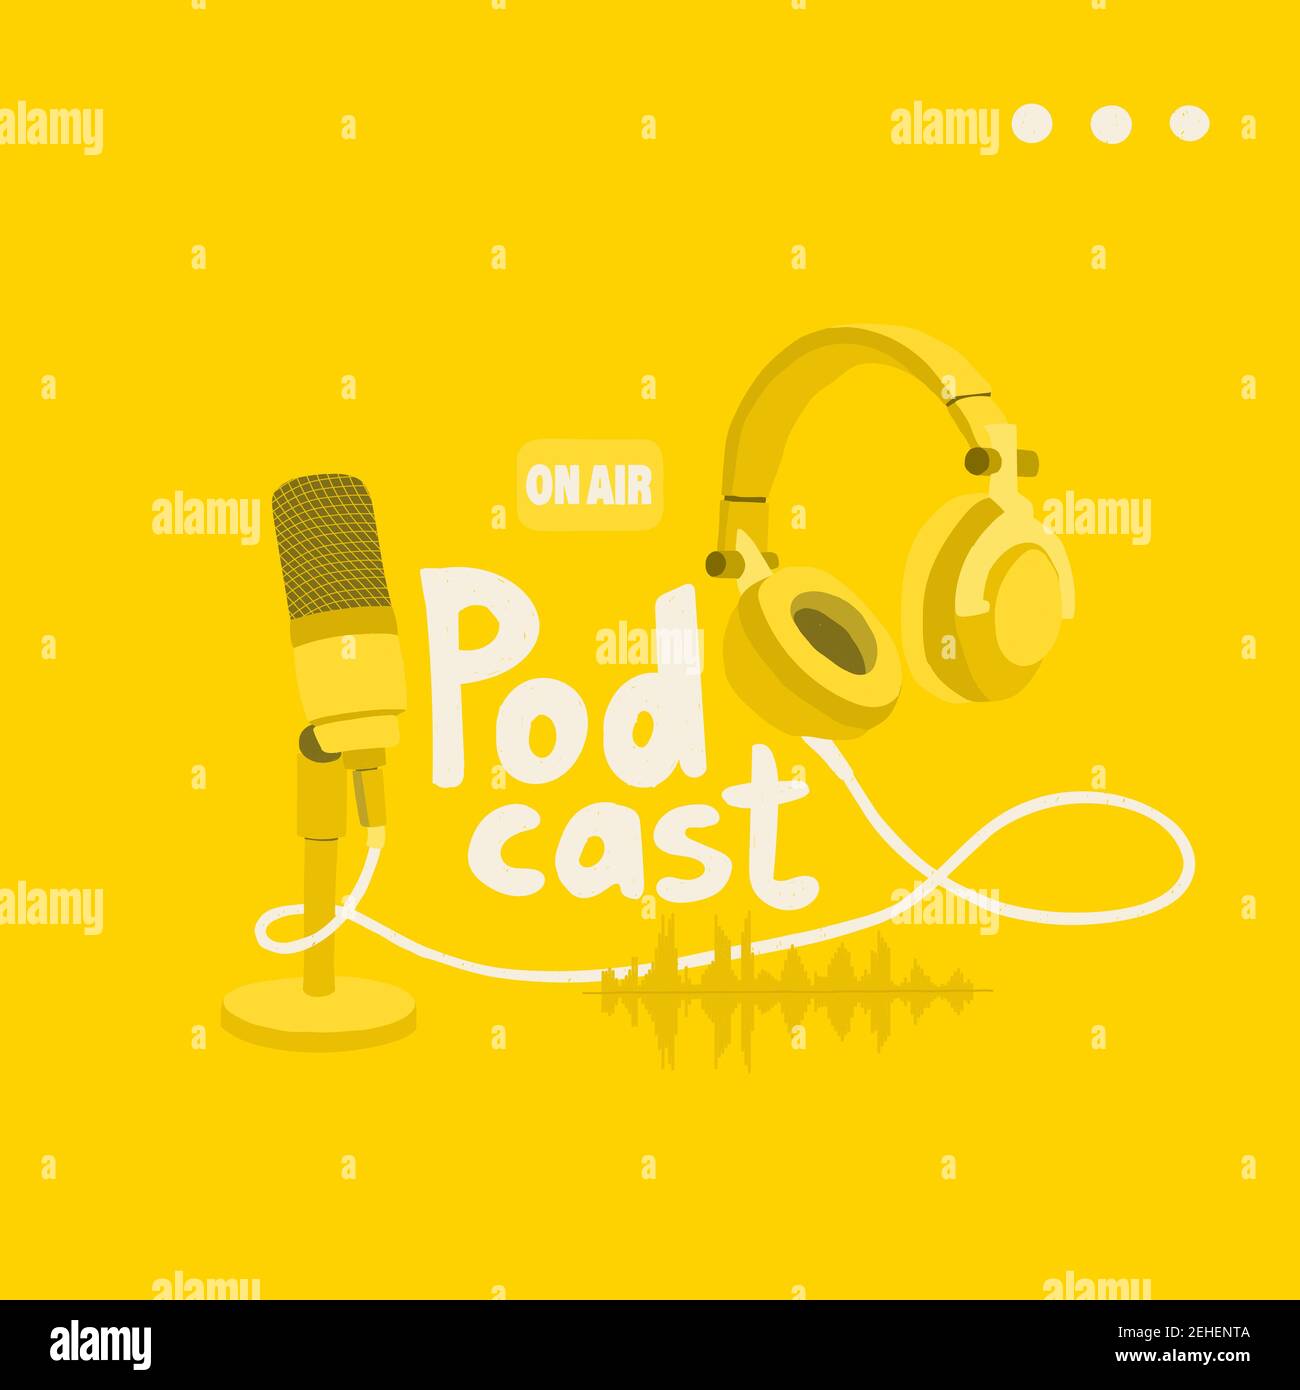 Cover für einen Podcast Blog. Studiomikrofon, Stereokopfhörer und Tonspur auf gelbem Hintergrund. EPS 10 Stock Vektor